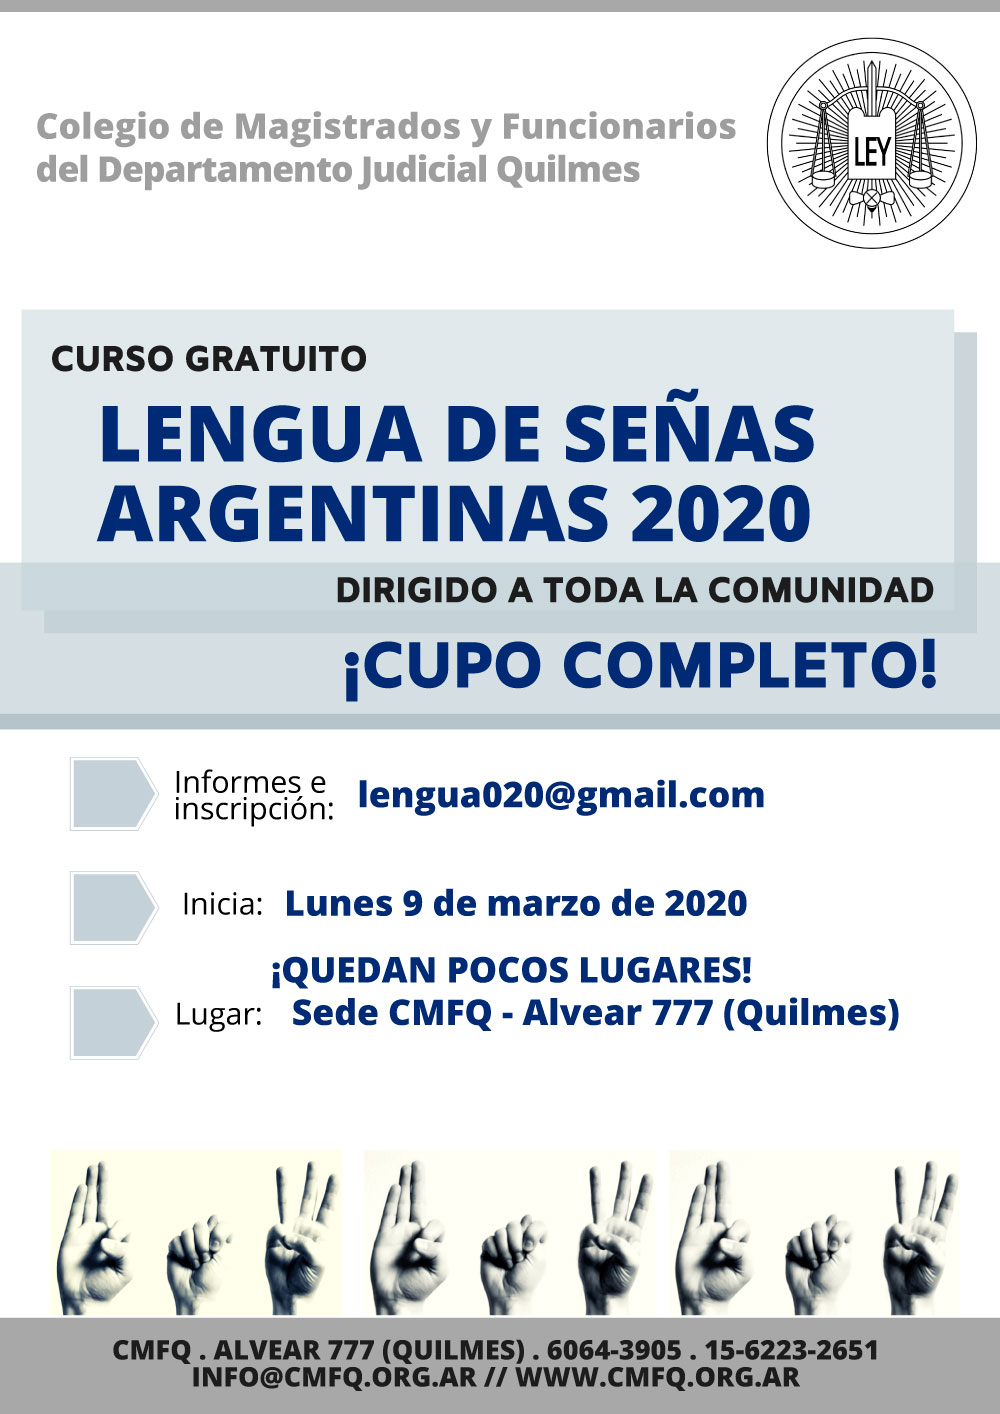 Curso gratuito: LENGUA DE SEÑAS ARGENTINAS 2020